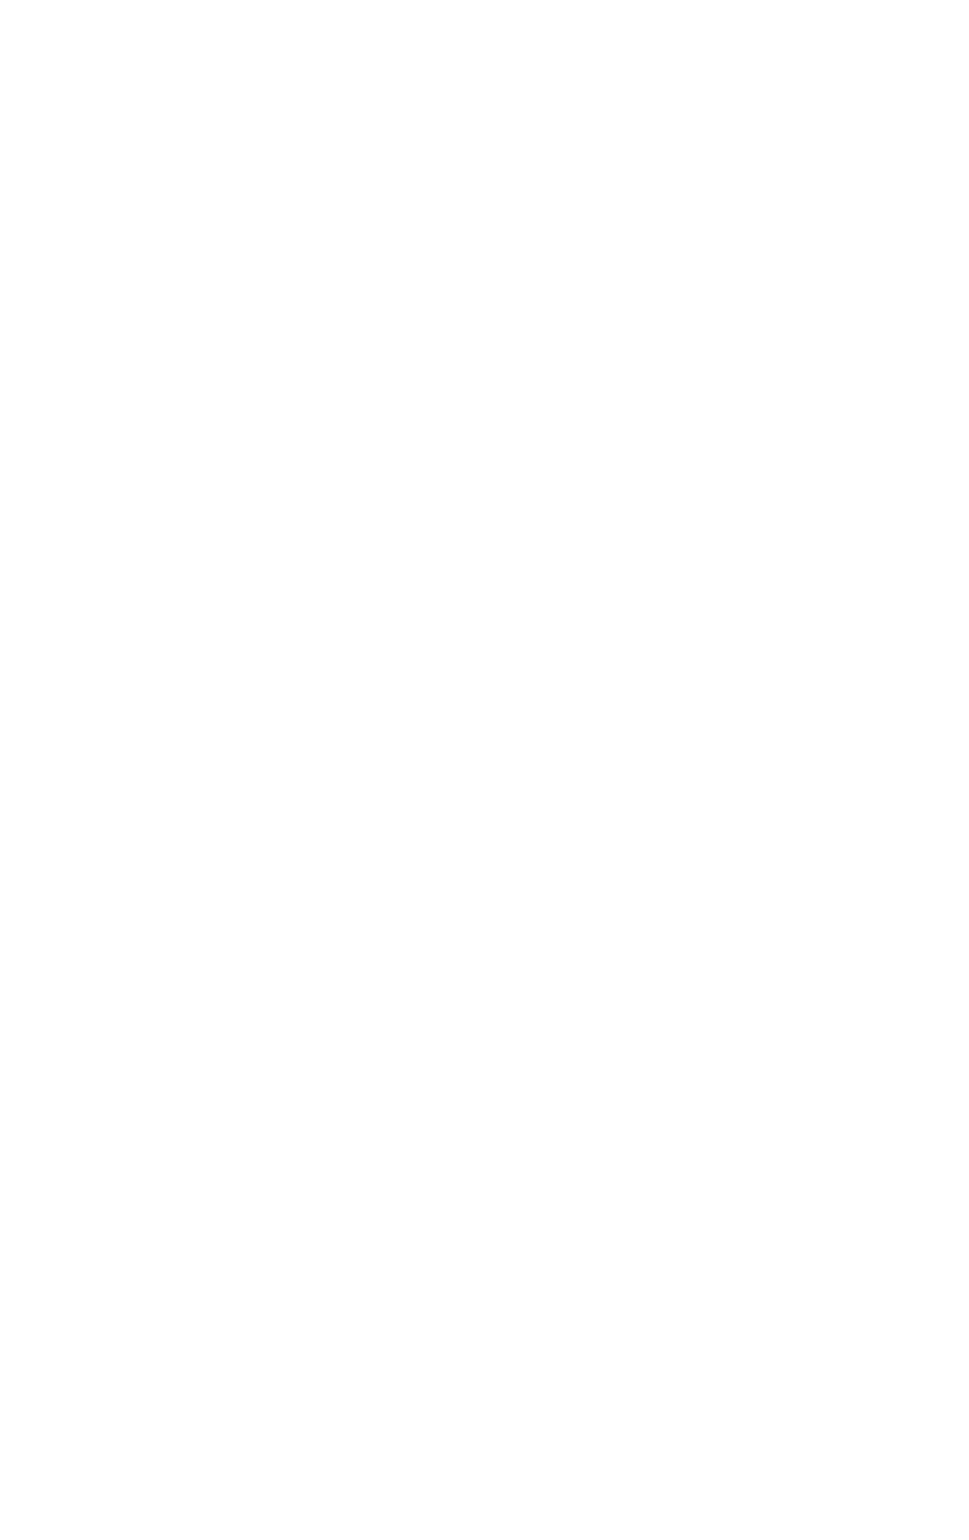 Etihad Etisalat (Mobily) logo grand pour les fonds sombres (PNG transparent)